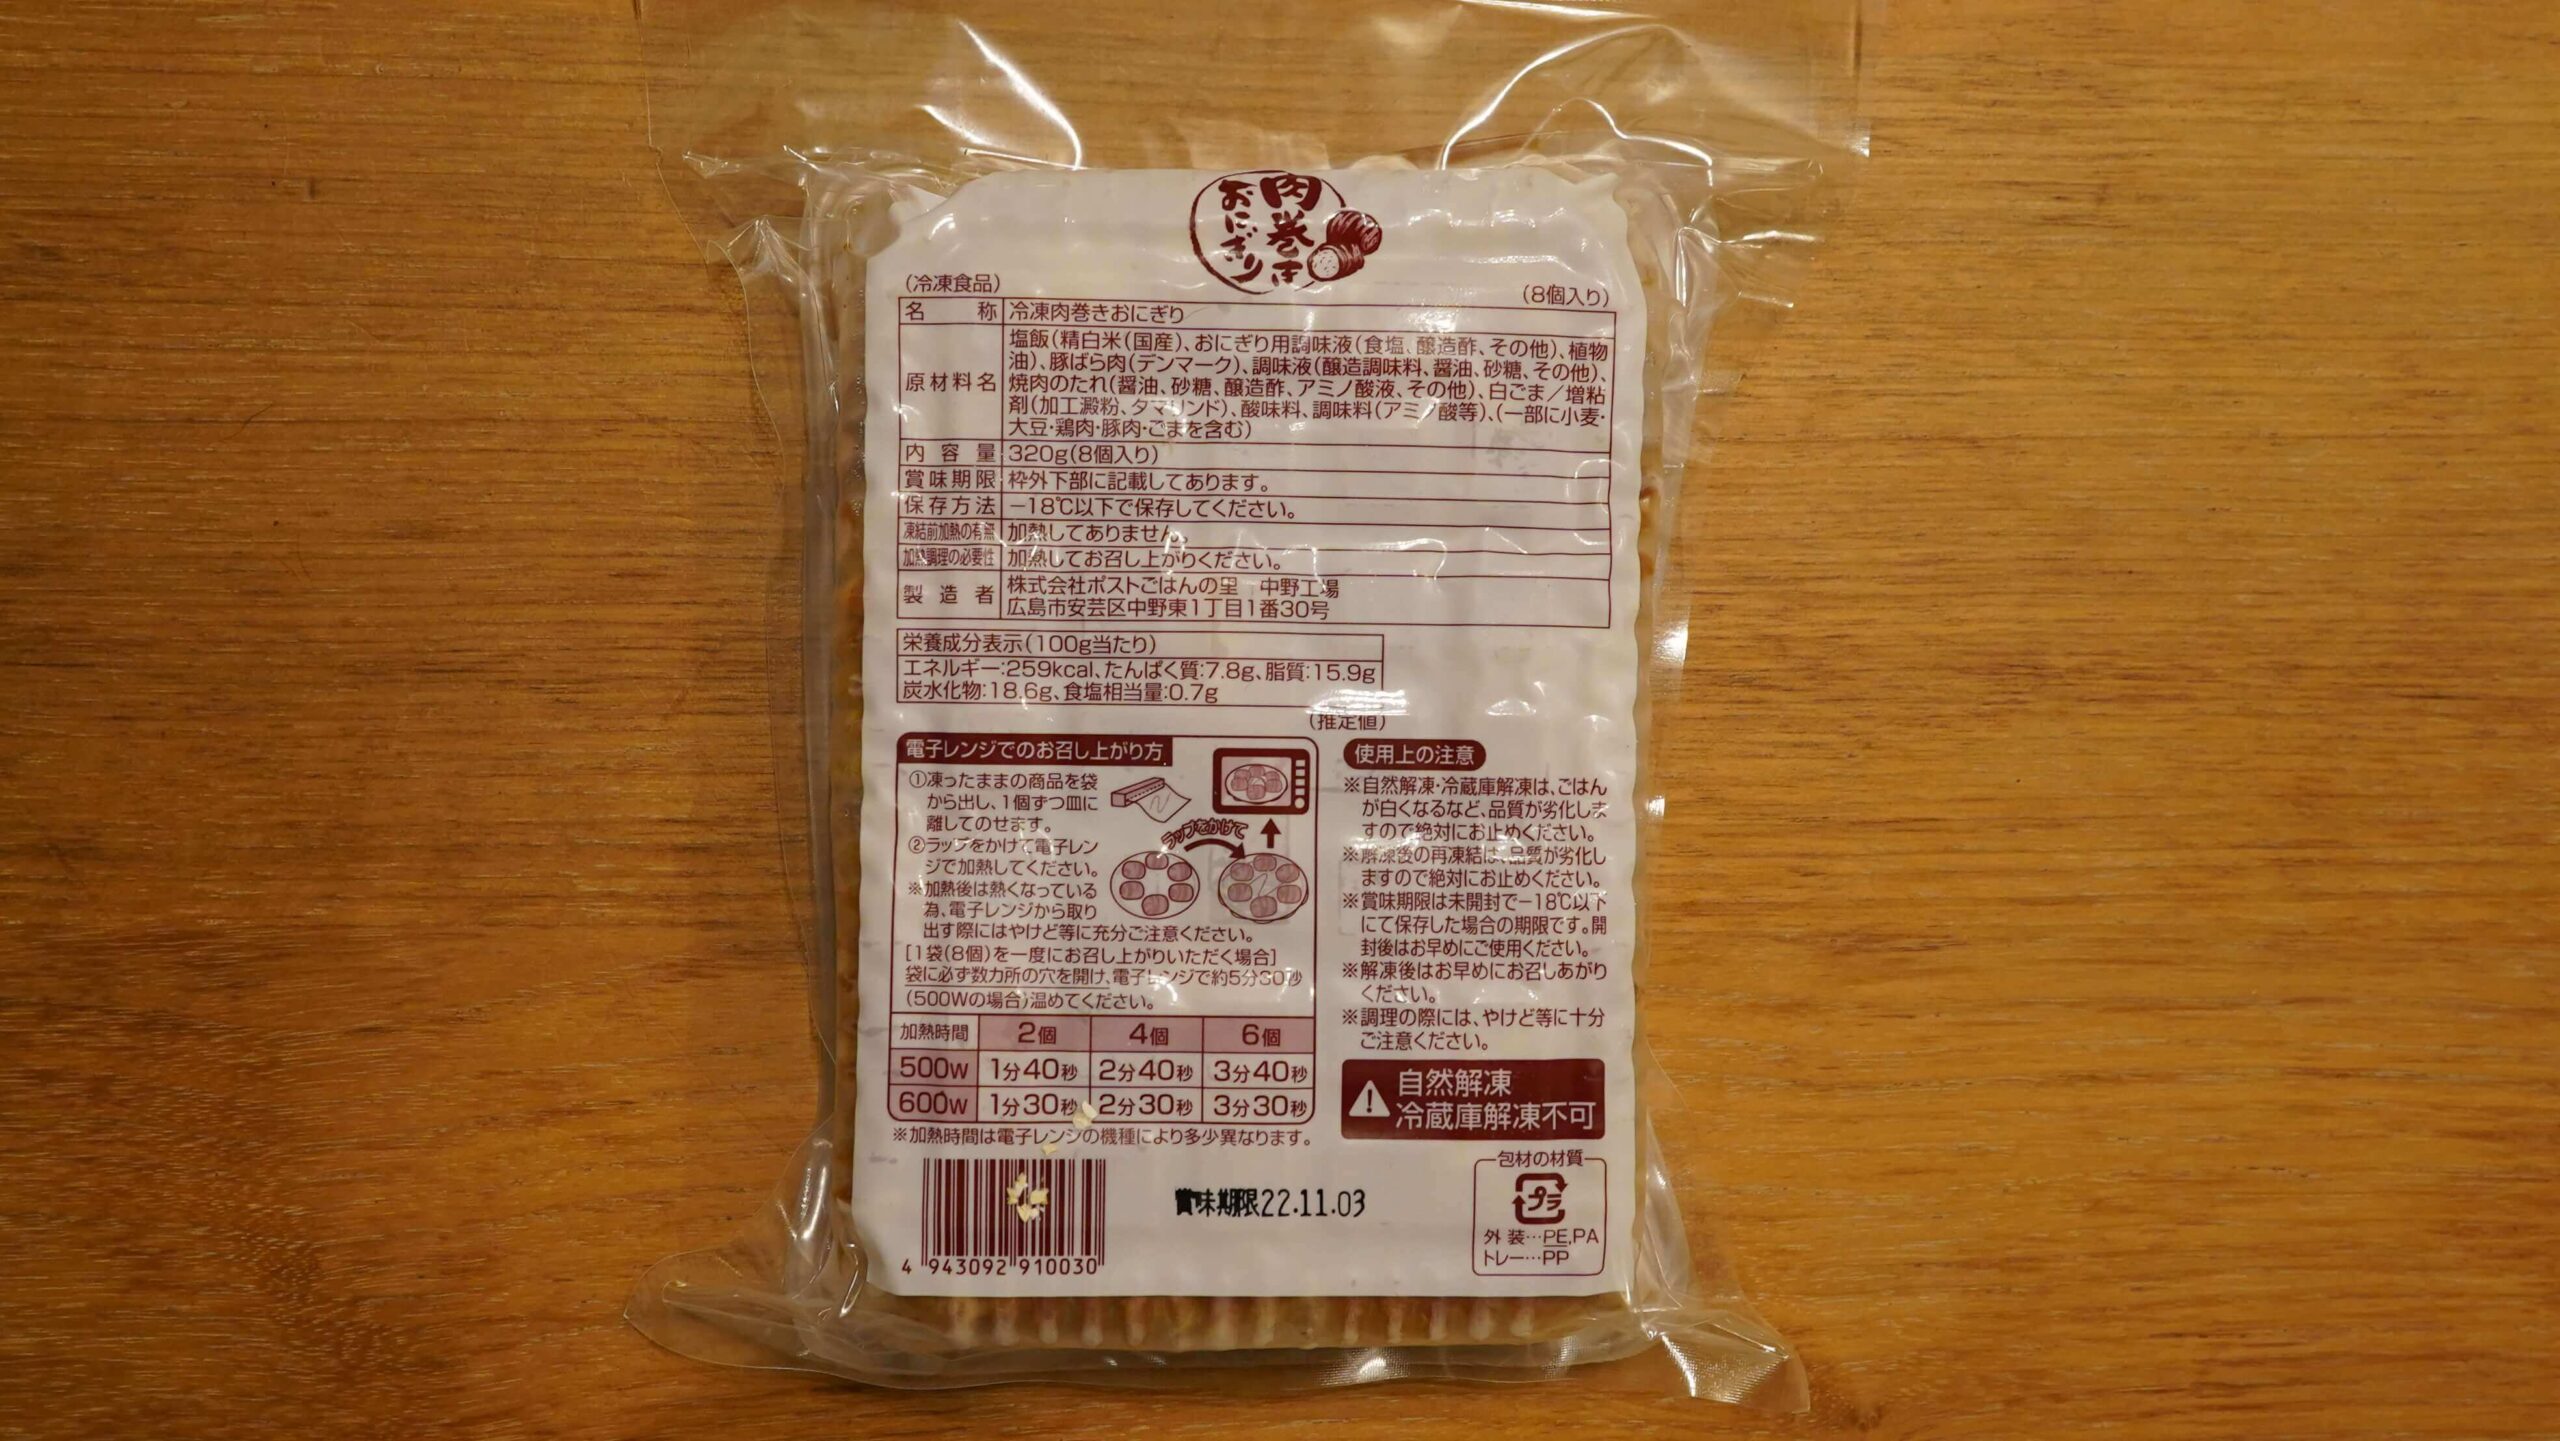 ごはんの里の冷凍食品「肉巻きおにぎり」のパッケージ裏面の写真